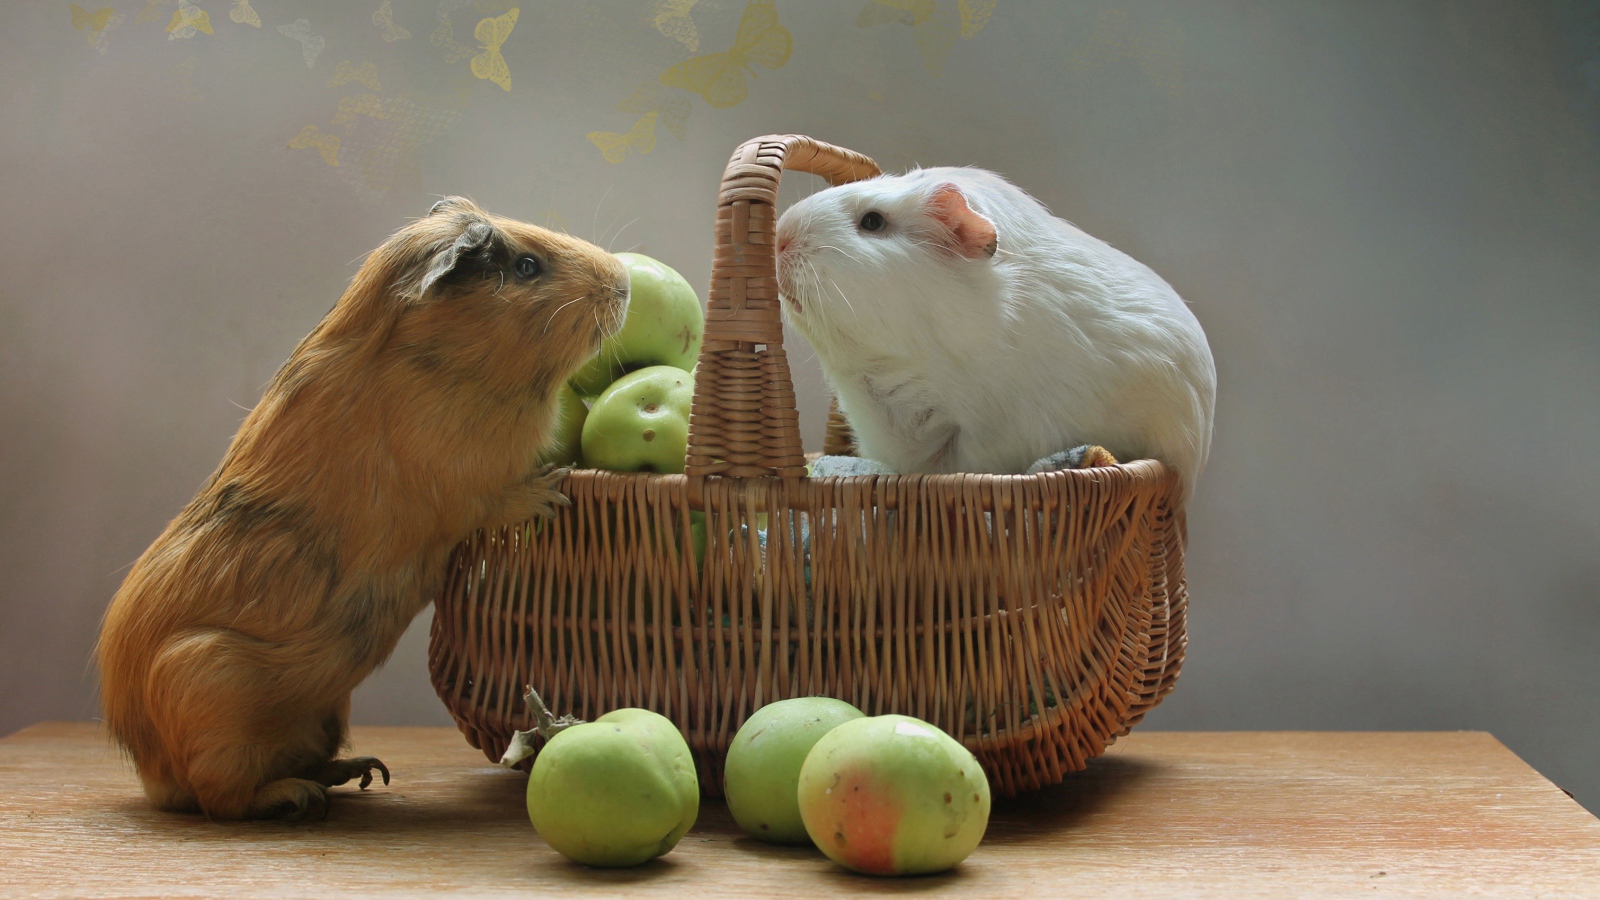 Две морские свинки в корзине с зелеными яблоками